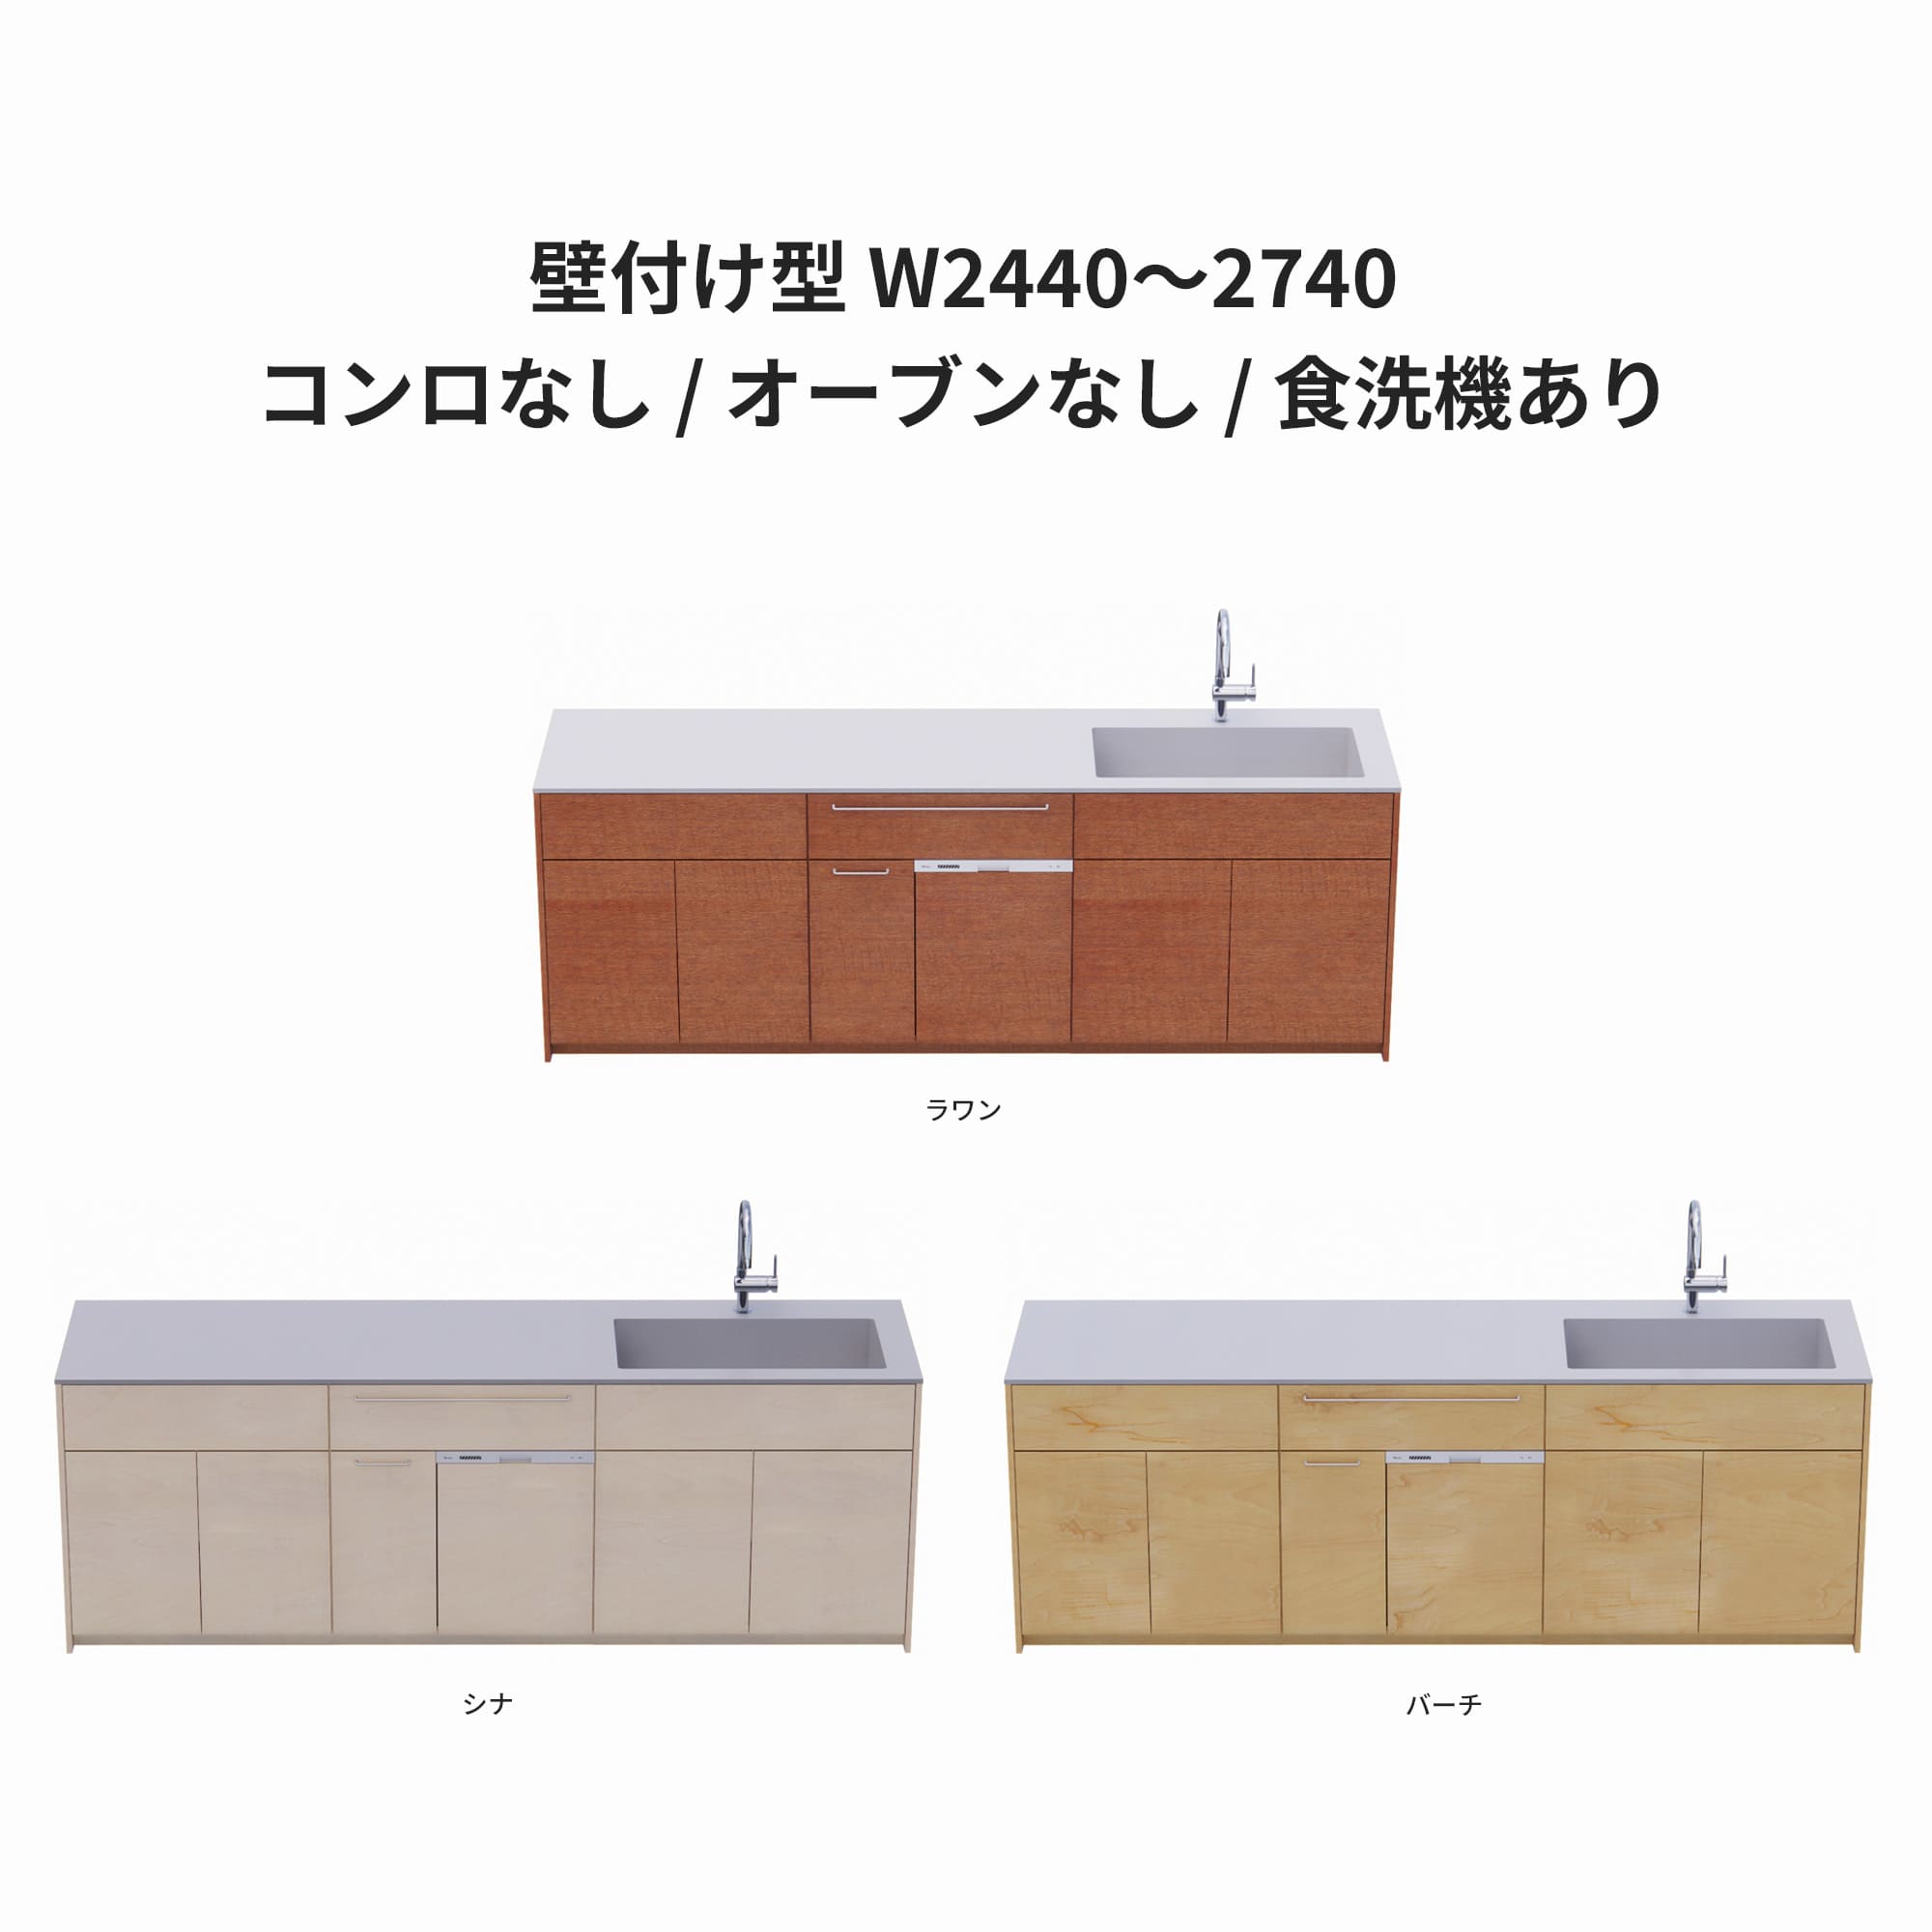 木製システムキッチン 壁付け型 W2440～2740・コンロなし / オーブンなし / 食洗機あり KB-KC022-27-G183 ラワン・シナ・バーチが選択できます